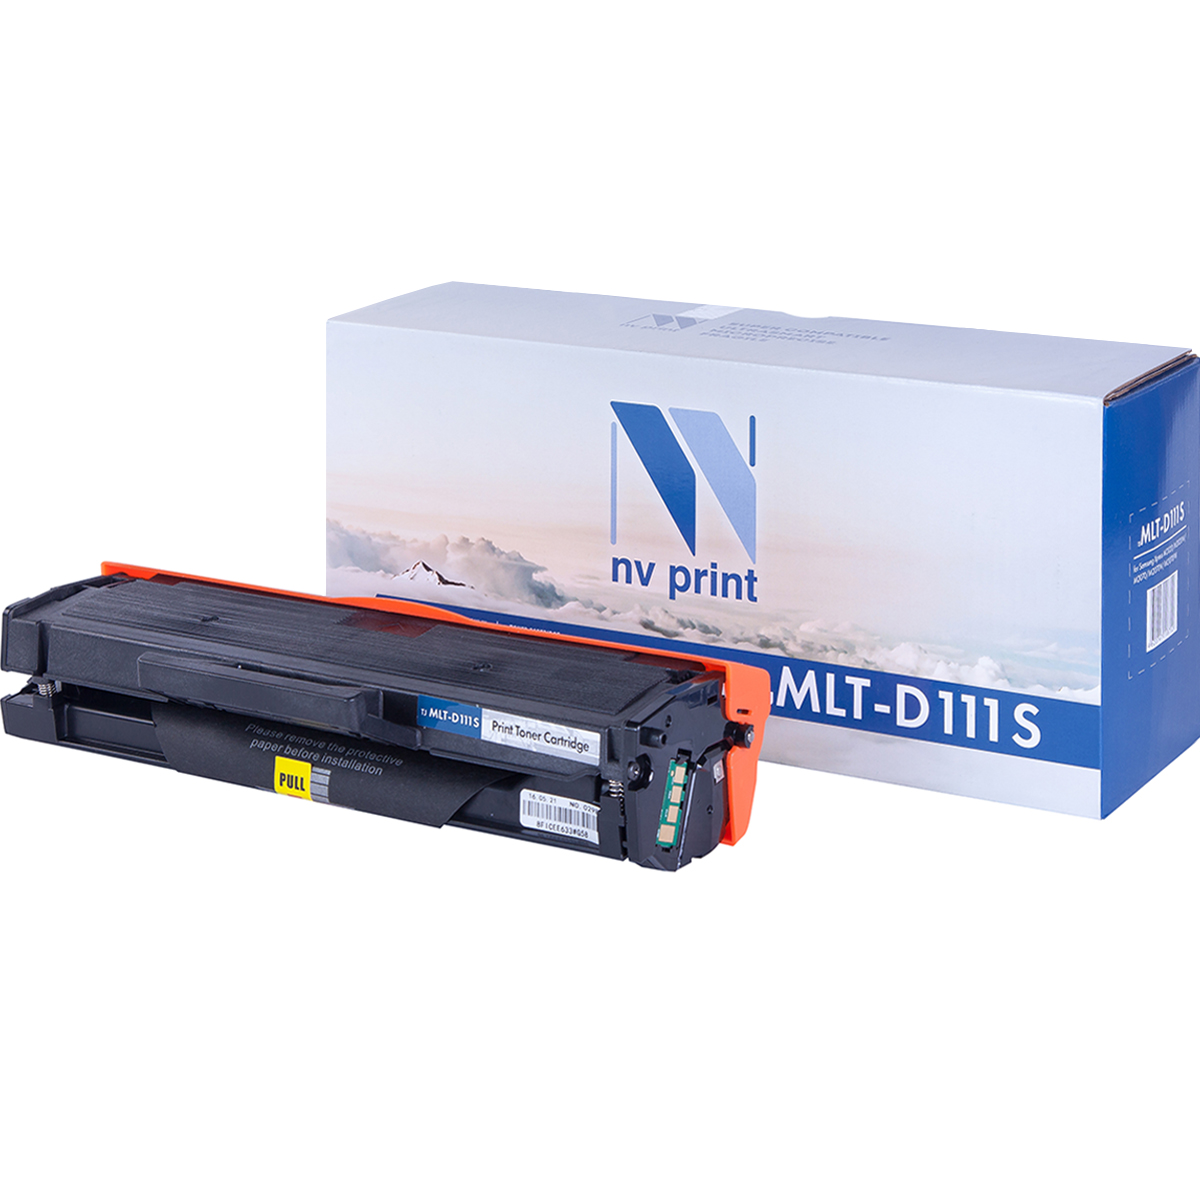 Картридж NV Print MLT-D111S  для Samsung Xpress M2020/M2020W/M2070/M2070W/M2070FW (1500k)